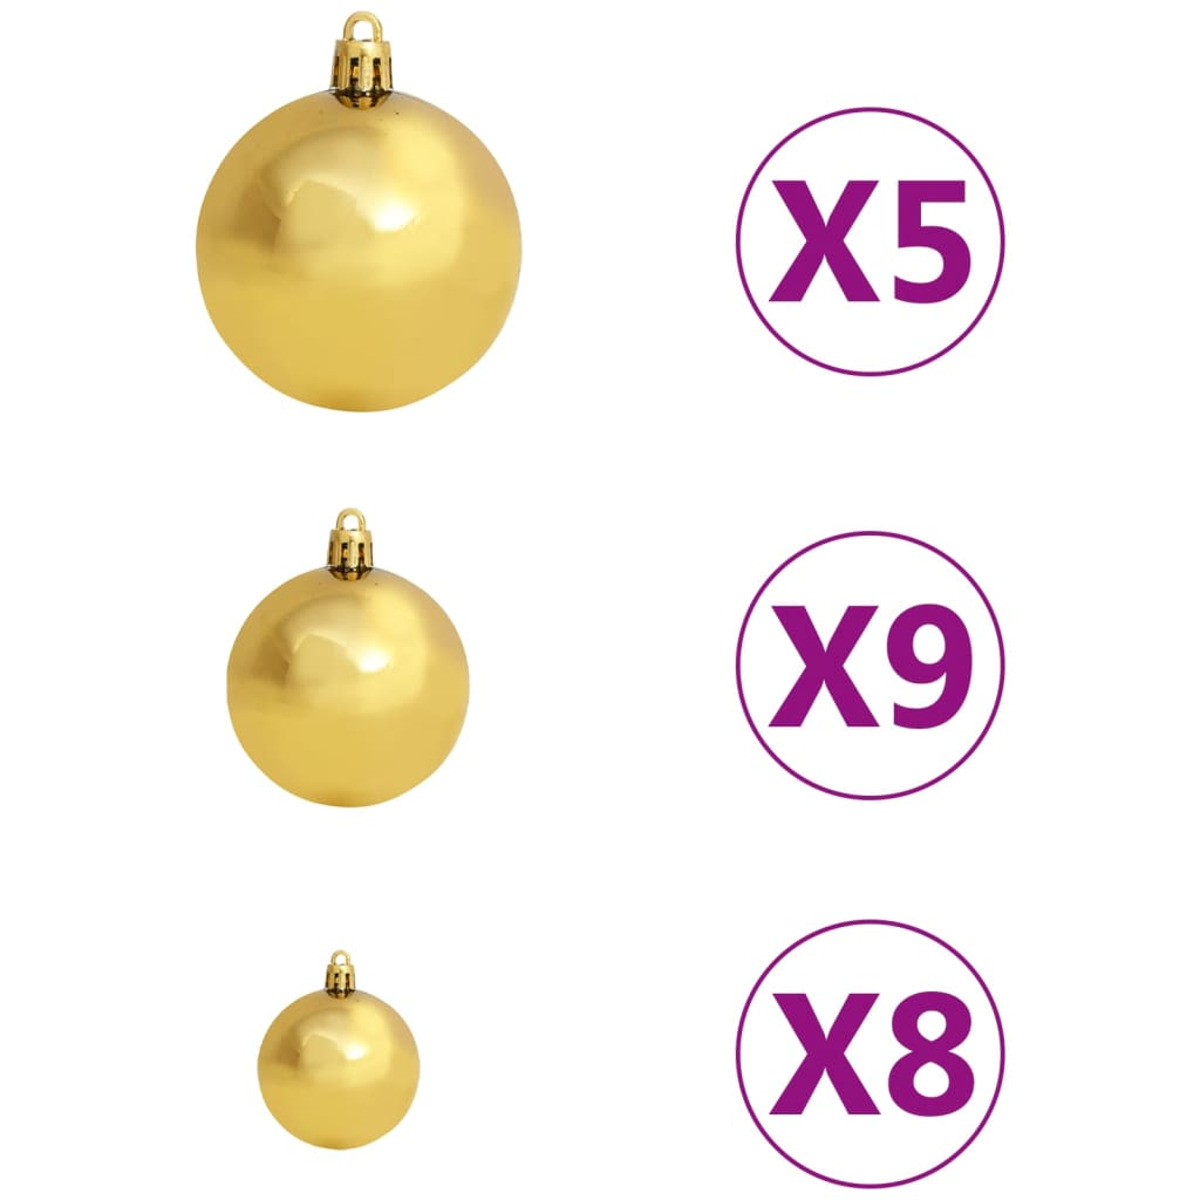 Weihnachtsbaum 3077492 VIDAXL